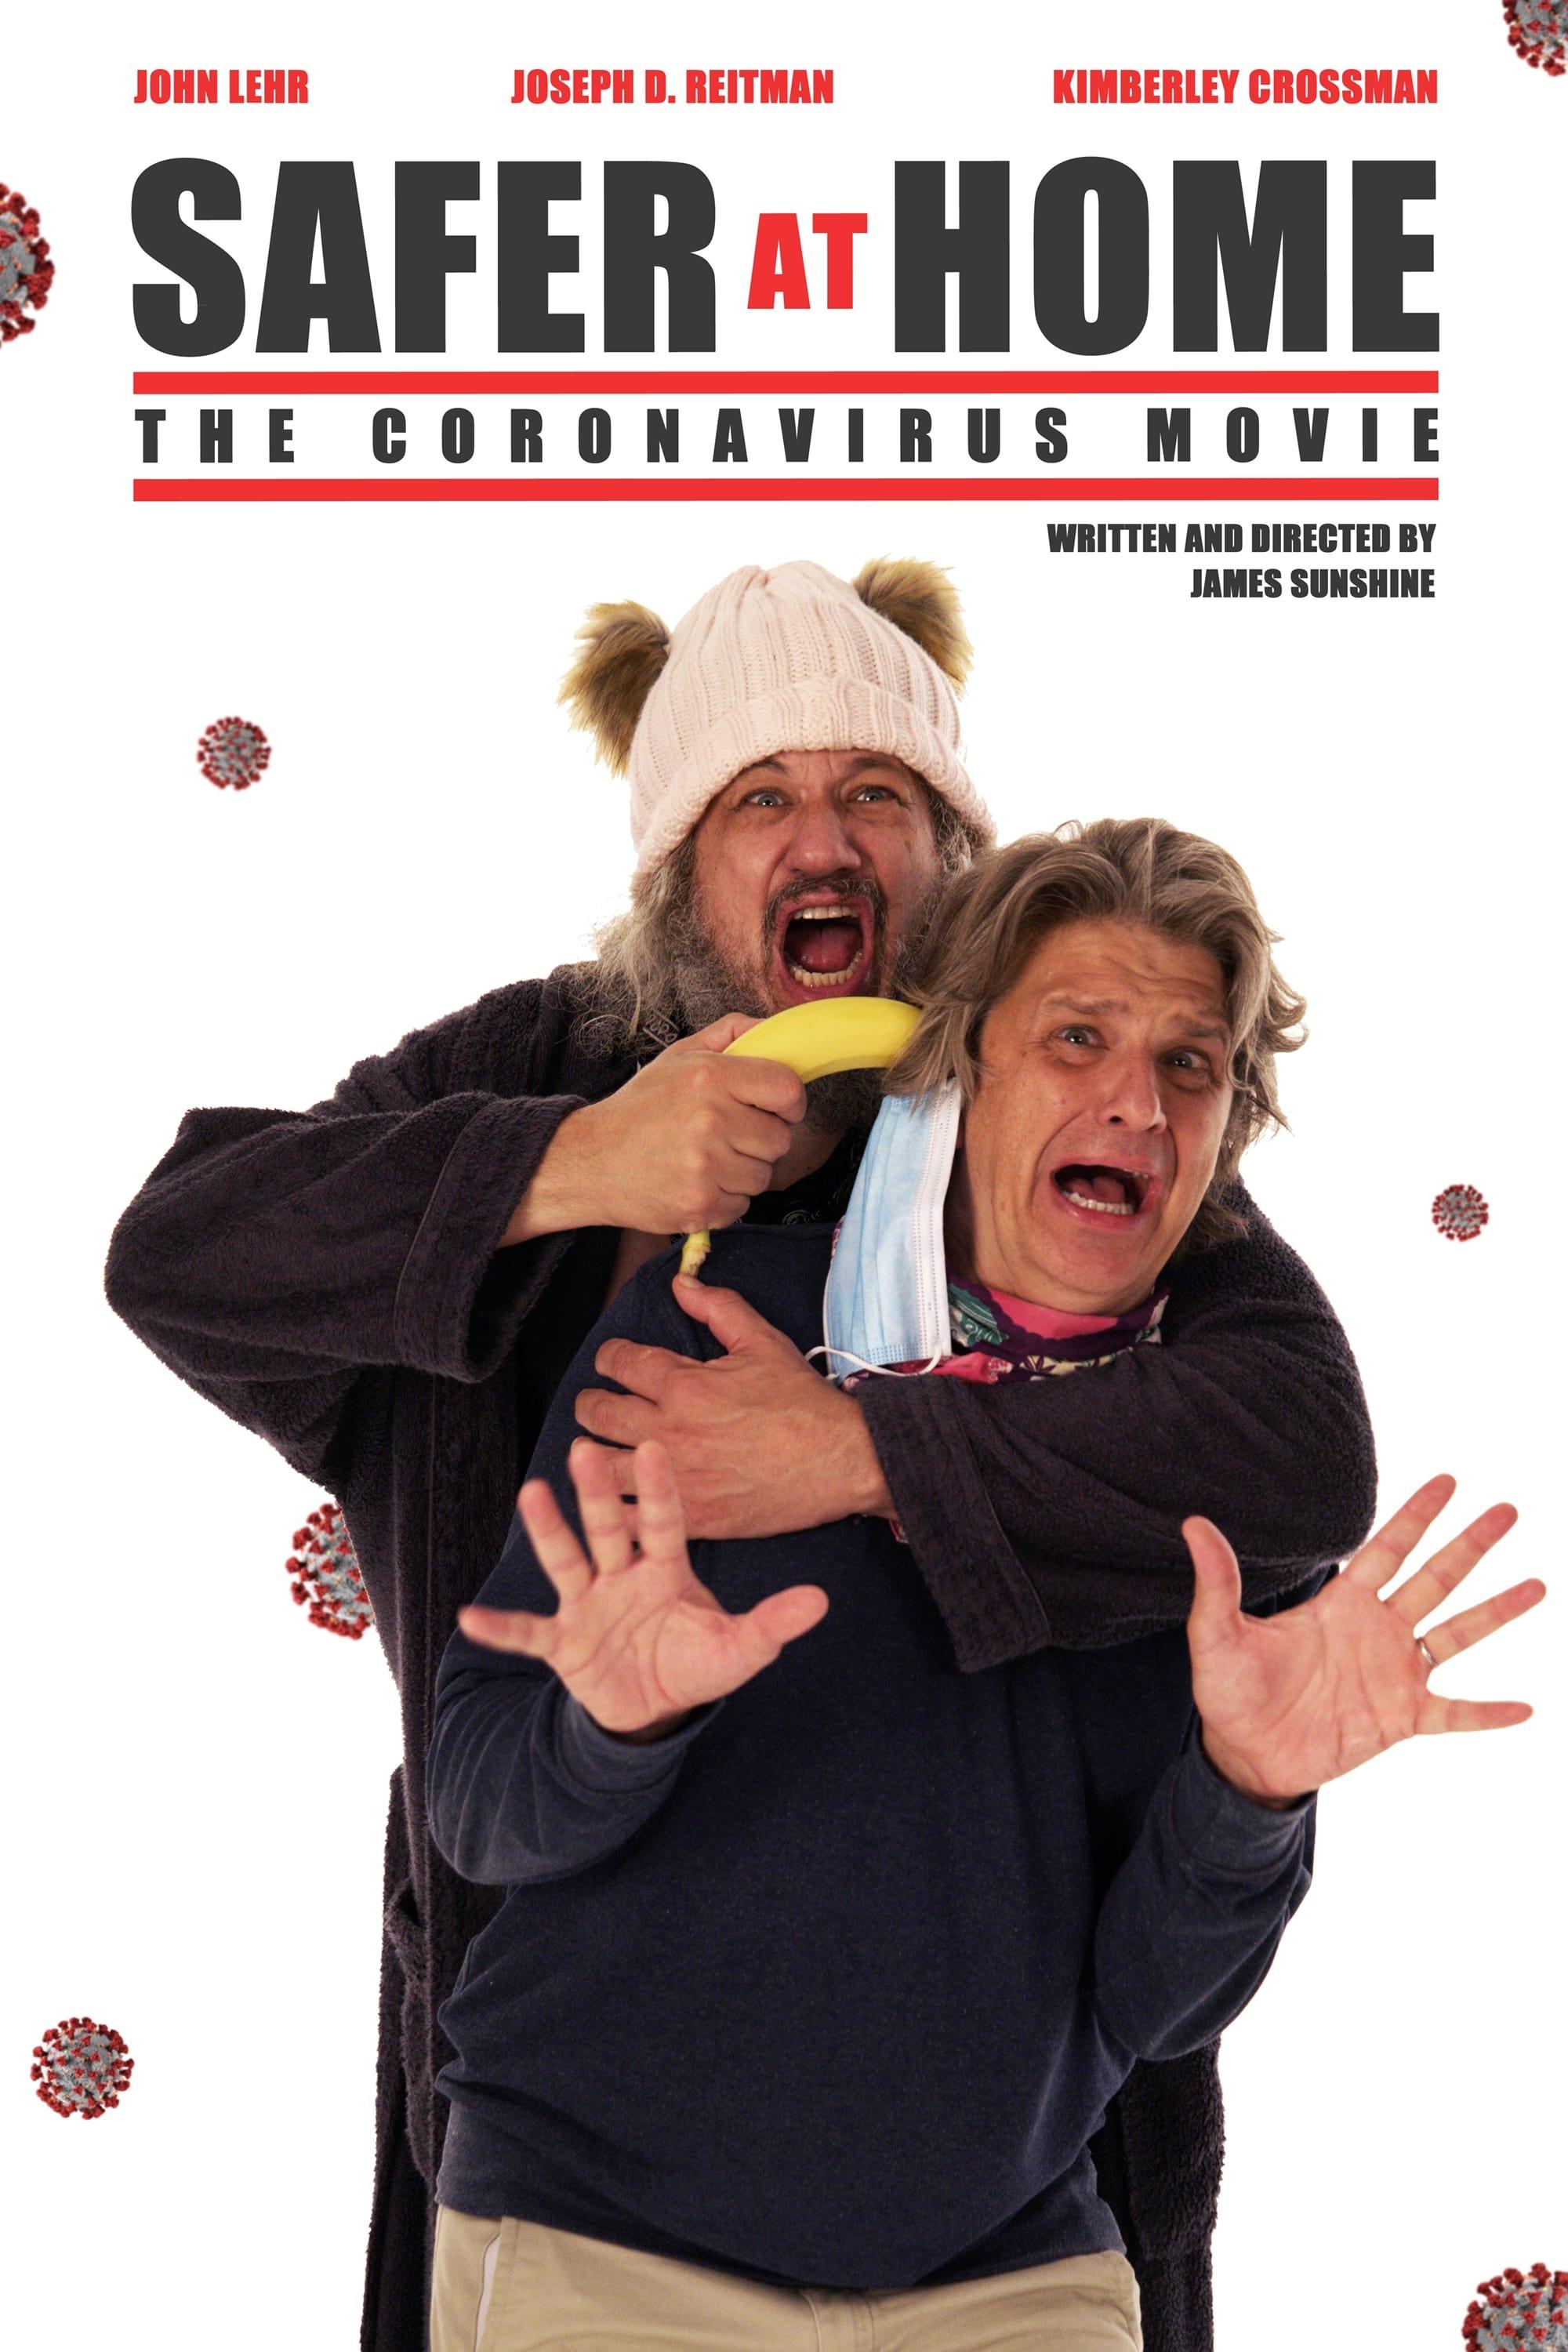 Coronavirus Conspiracy poster